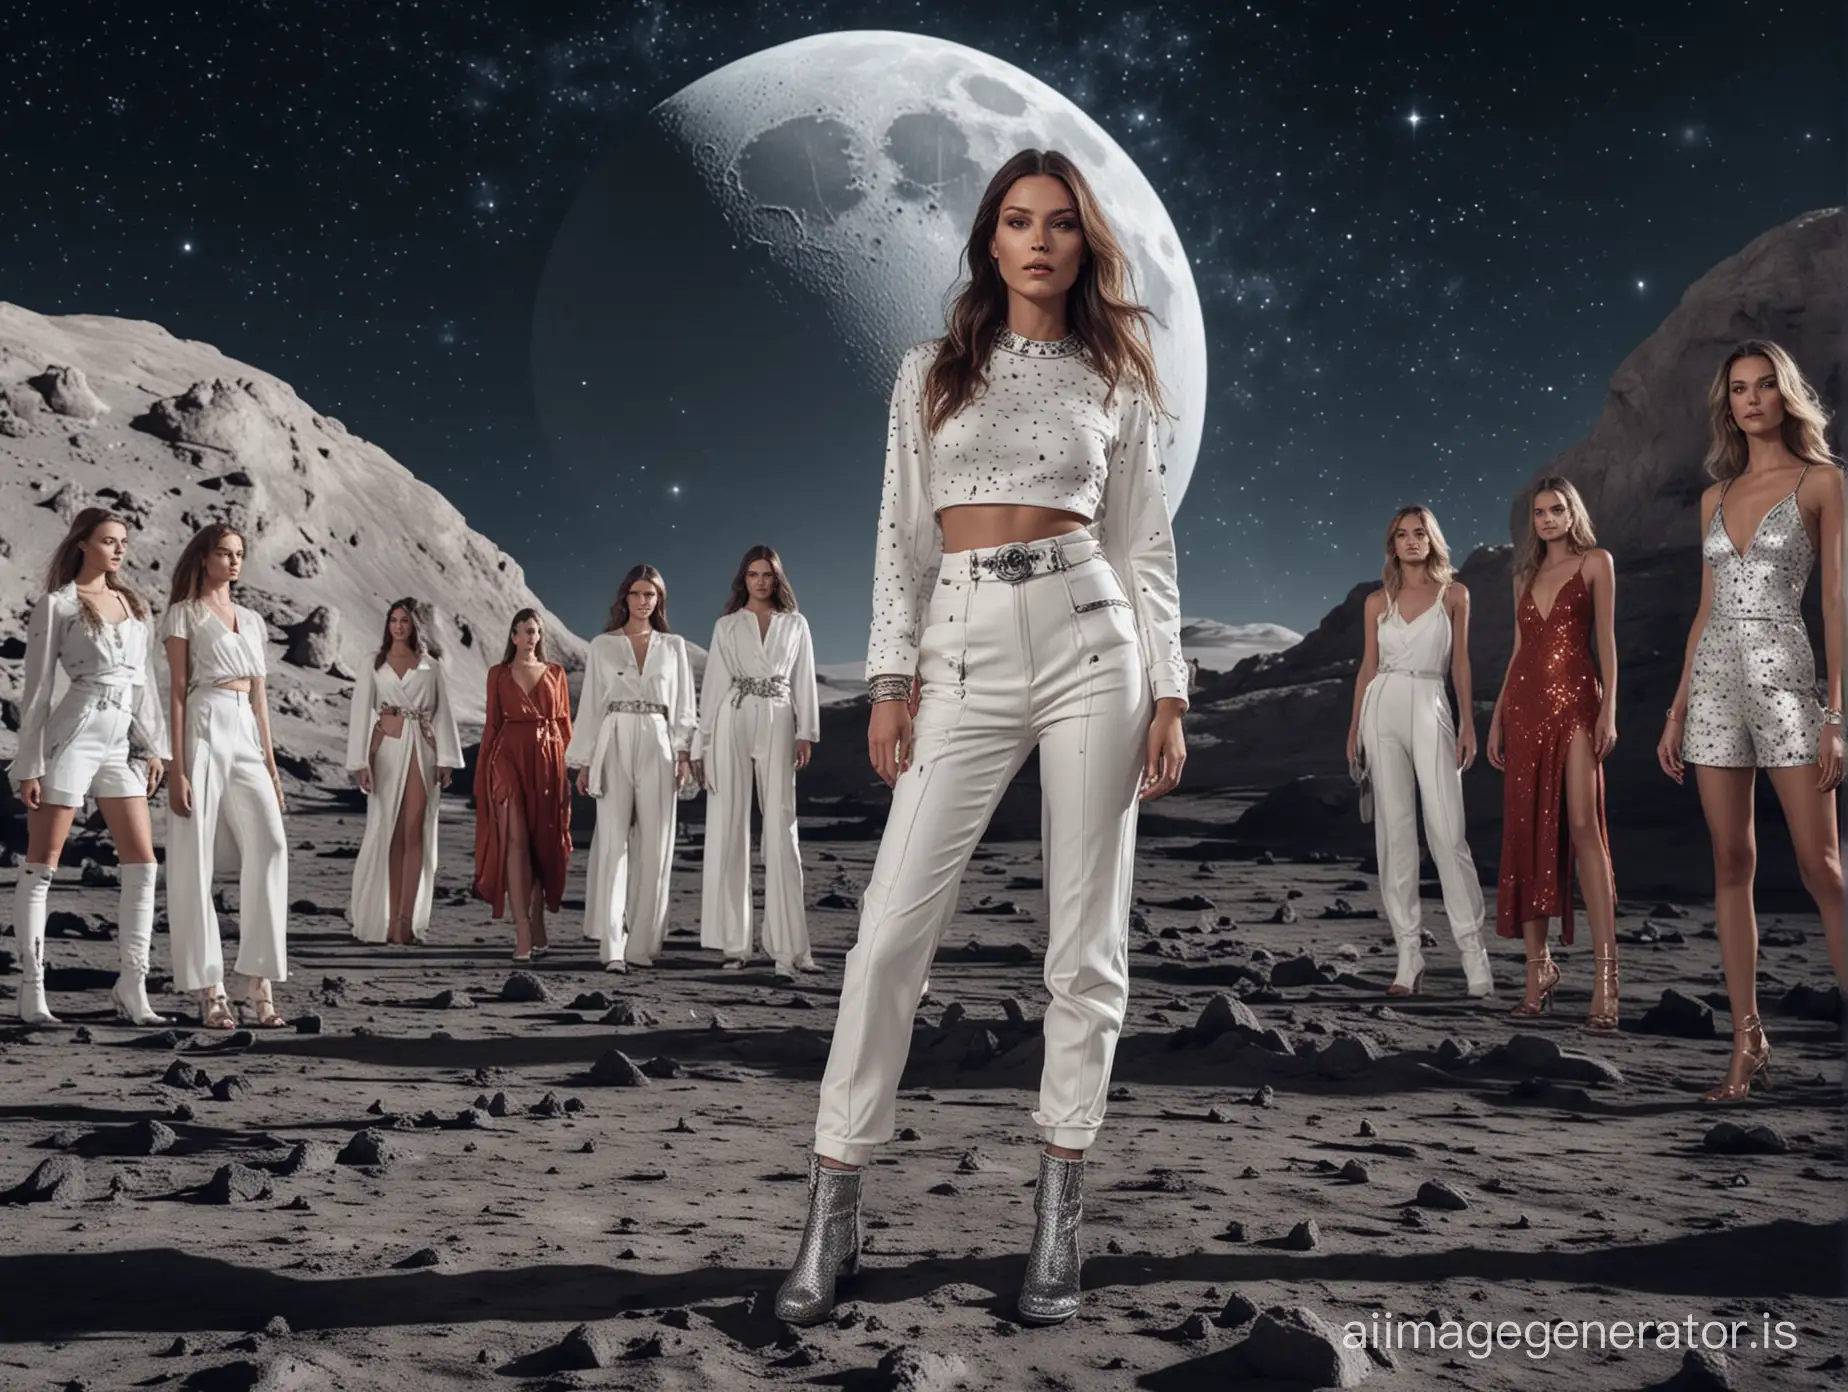 Moonlit-Supermodel-Catwalk-Among-the-Stars